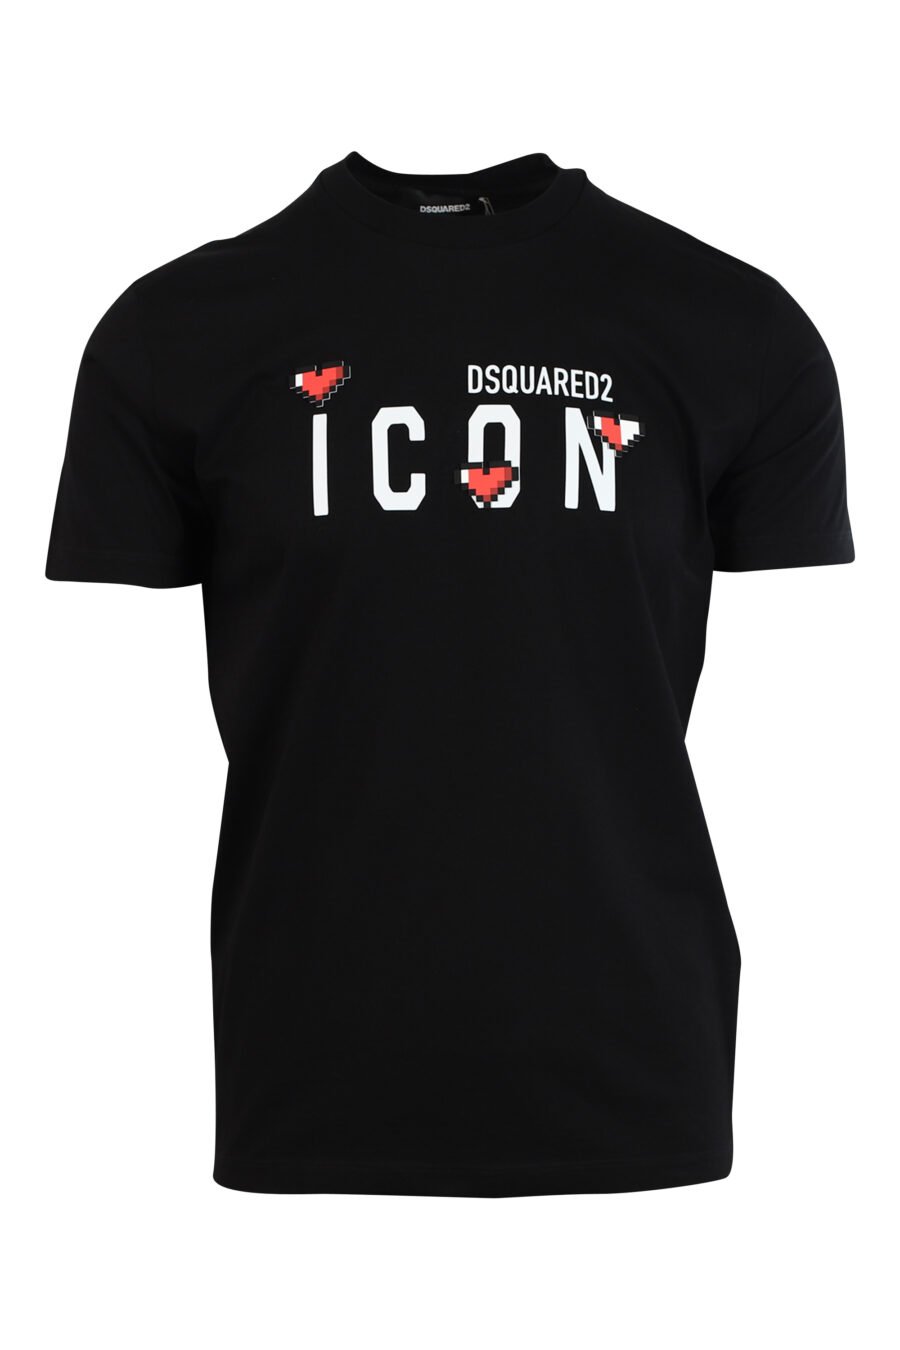 T-shirt noir avec maxilogo "icône cœur pixel" - 8052134980910